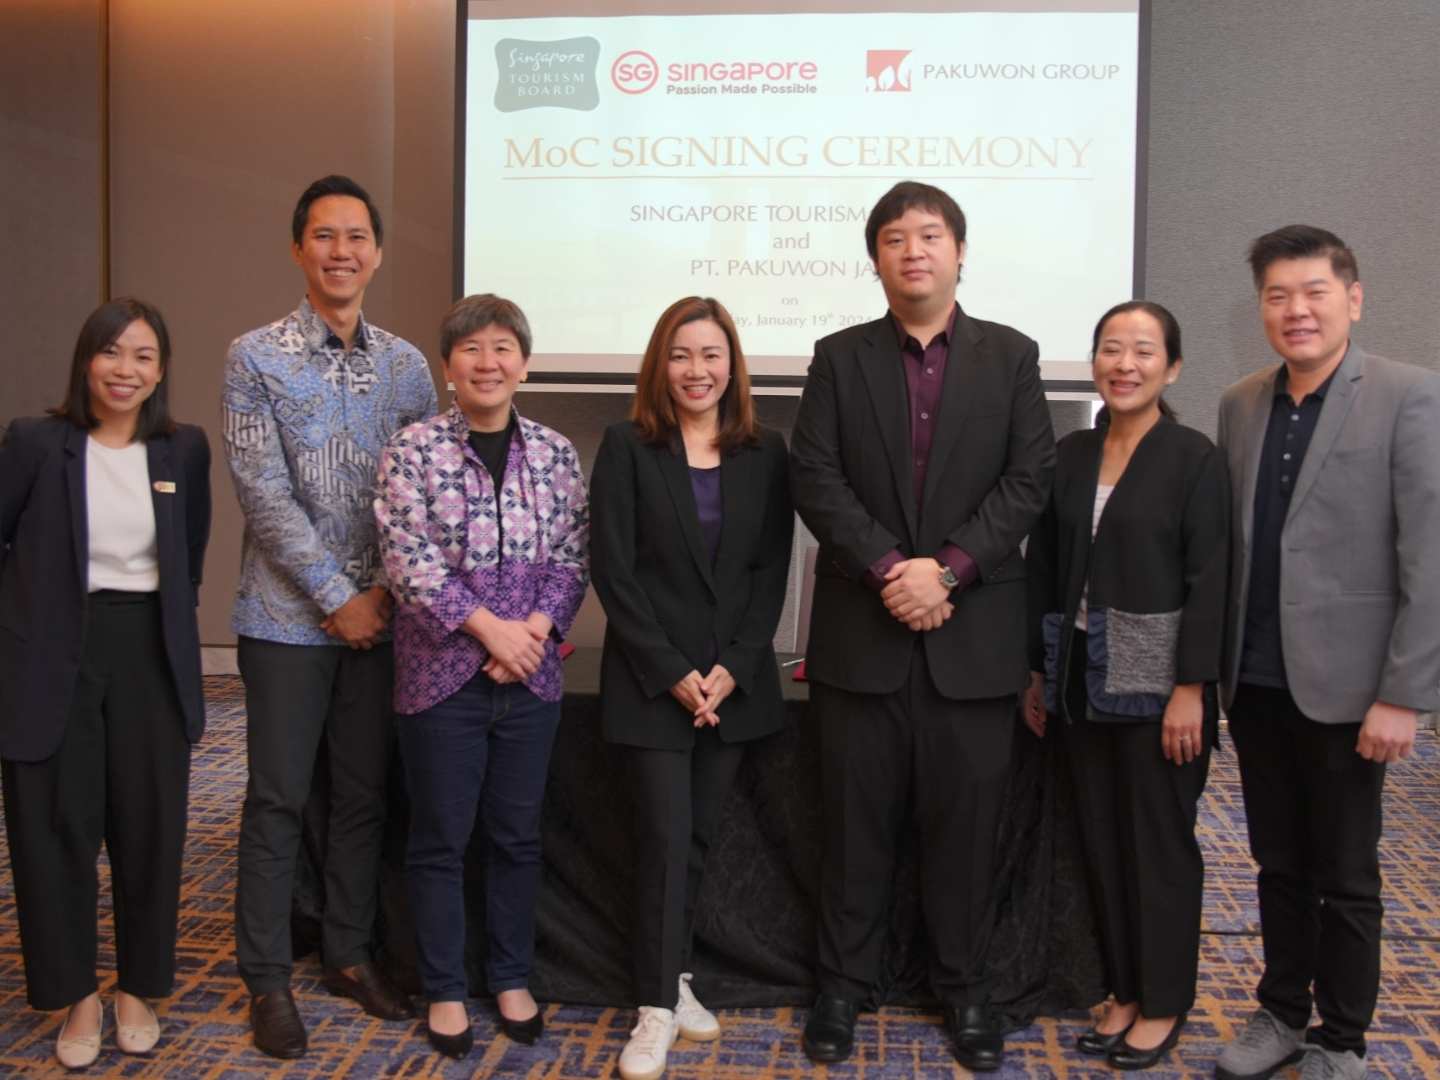 Kolaborasi Singapore Tourism Board (STB) dengan Pakuwon Group